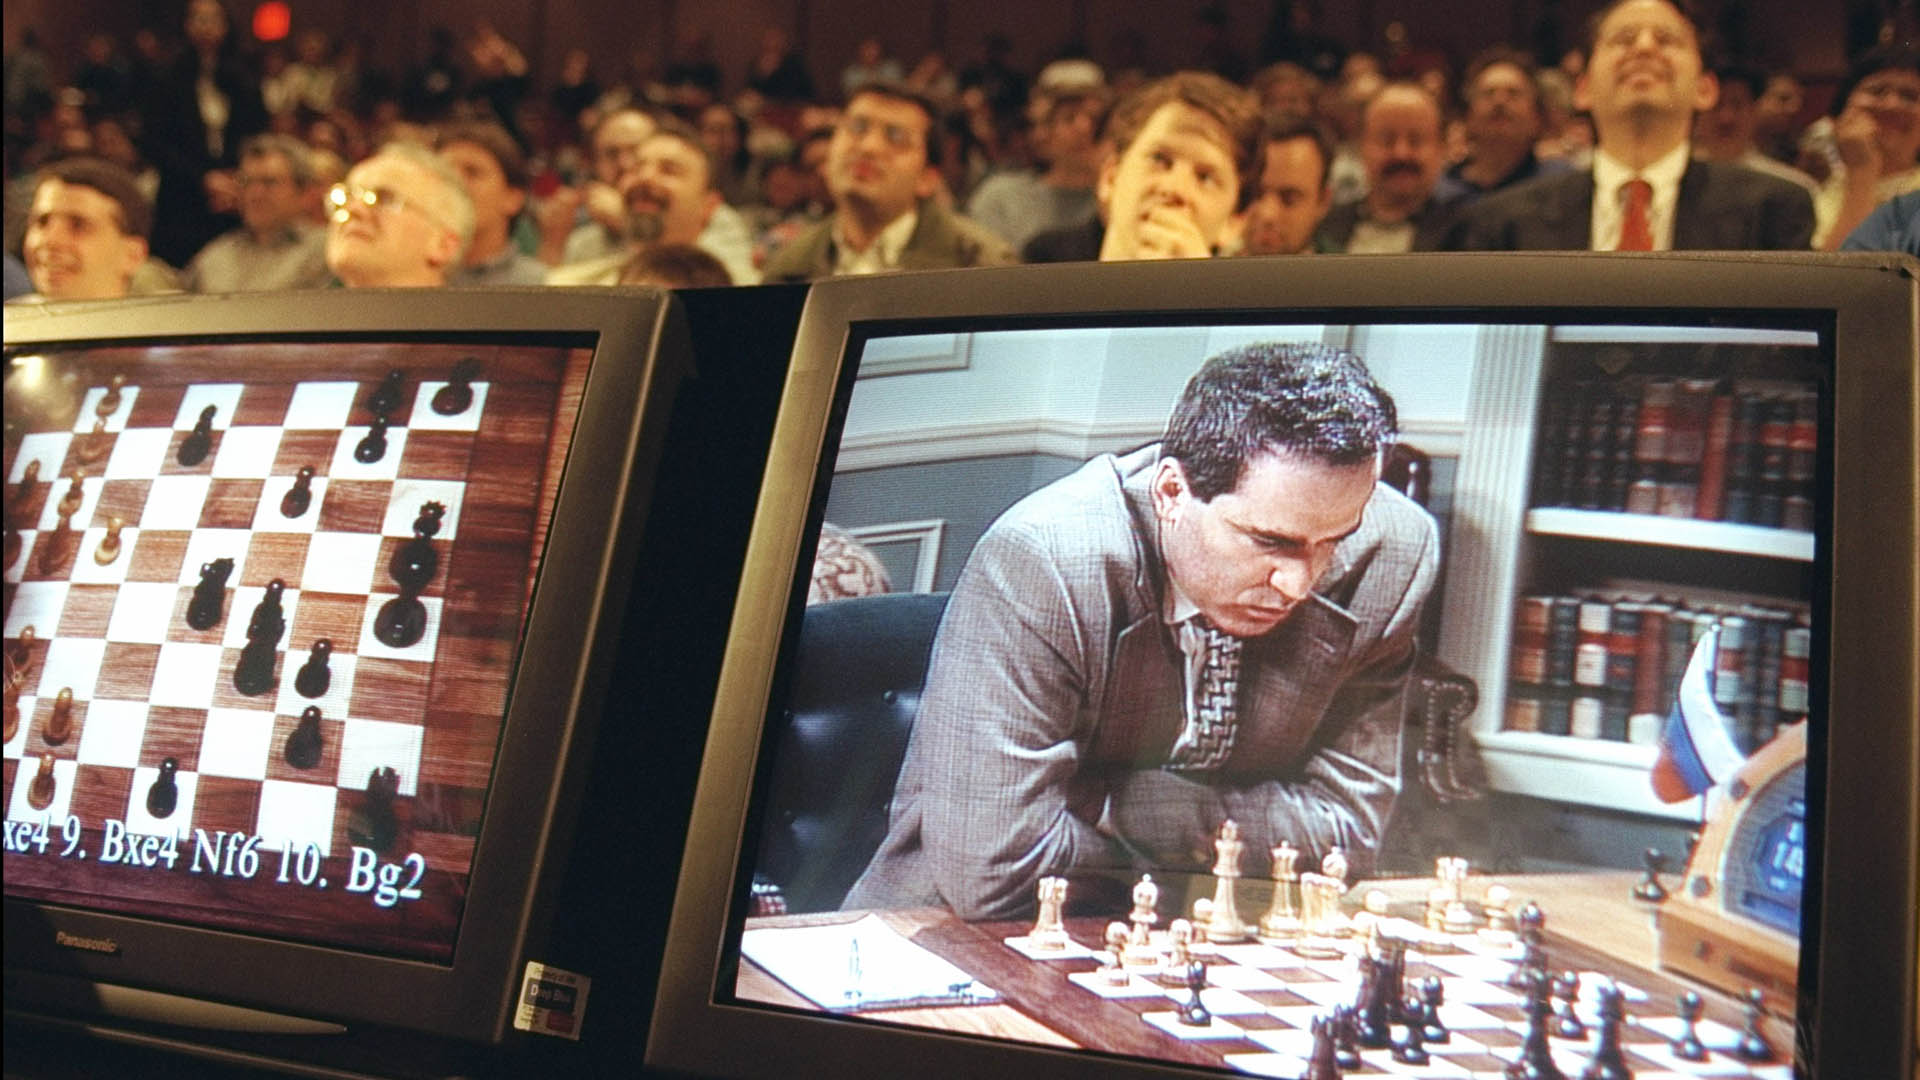 Garry Kasparov pensando su siguiente movimiento contra Deep Blue, la primera vez que una máquina predecía el futuro en el ajedrez. A partir de allí, y hoy más con la inteligencia artificial, no hay humanos que puedan vencer a la máquina